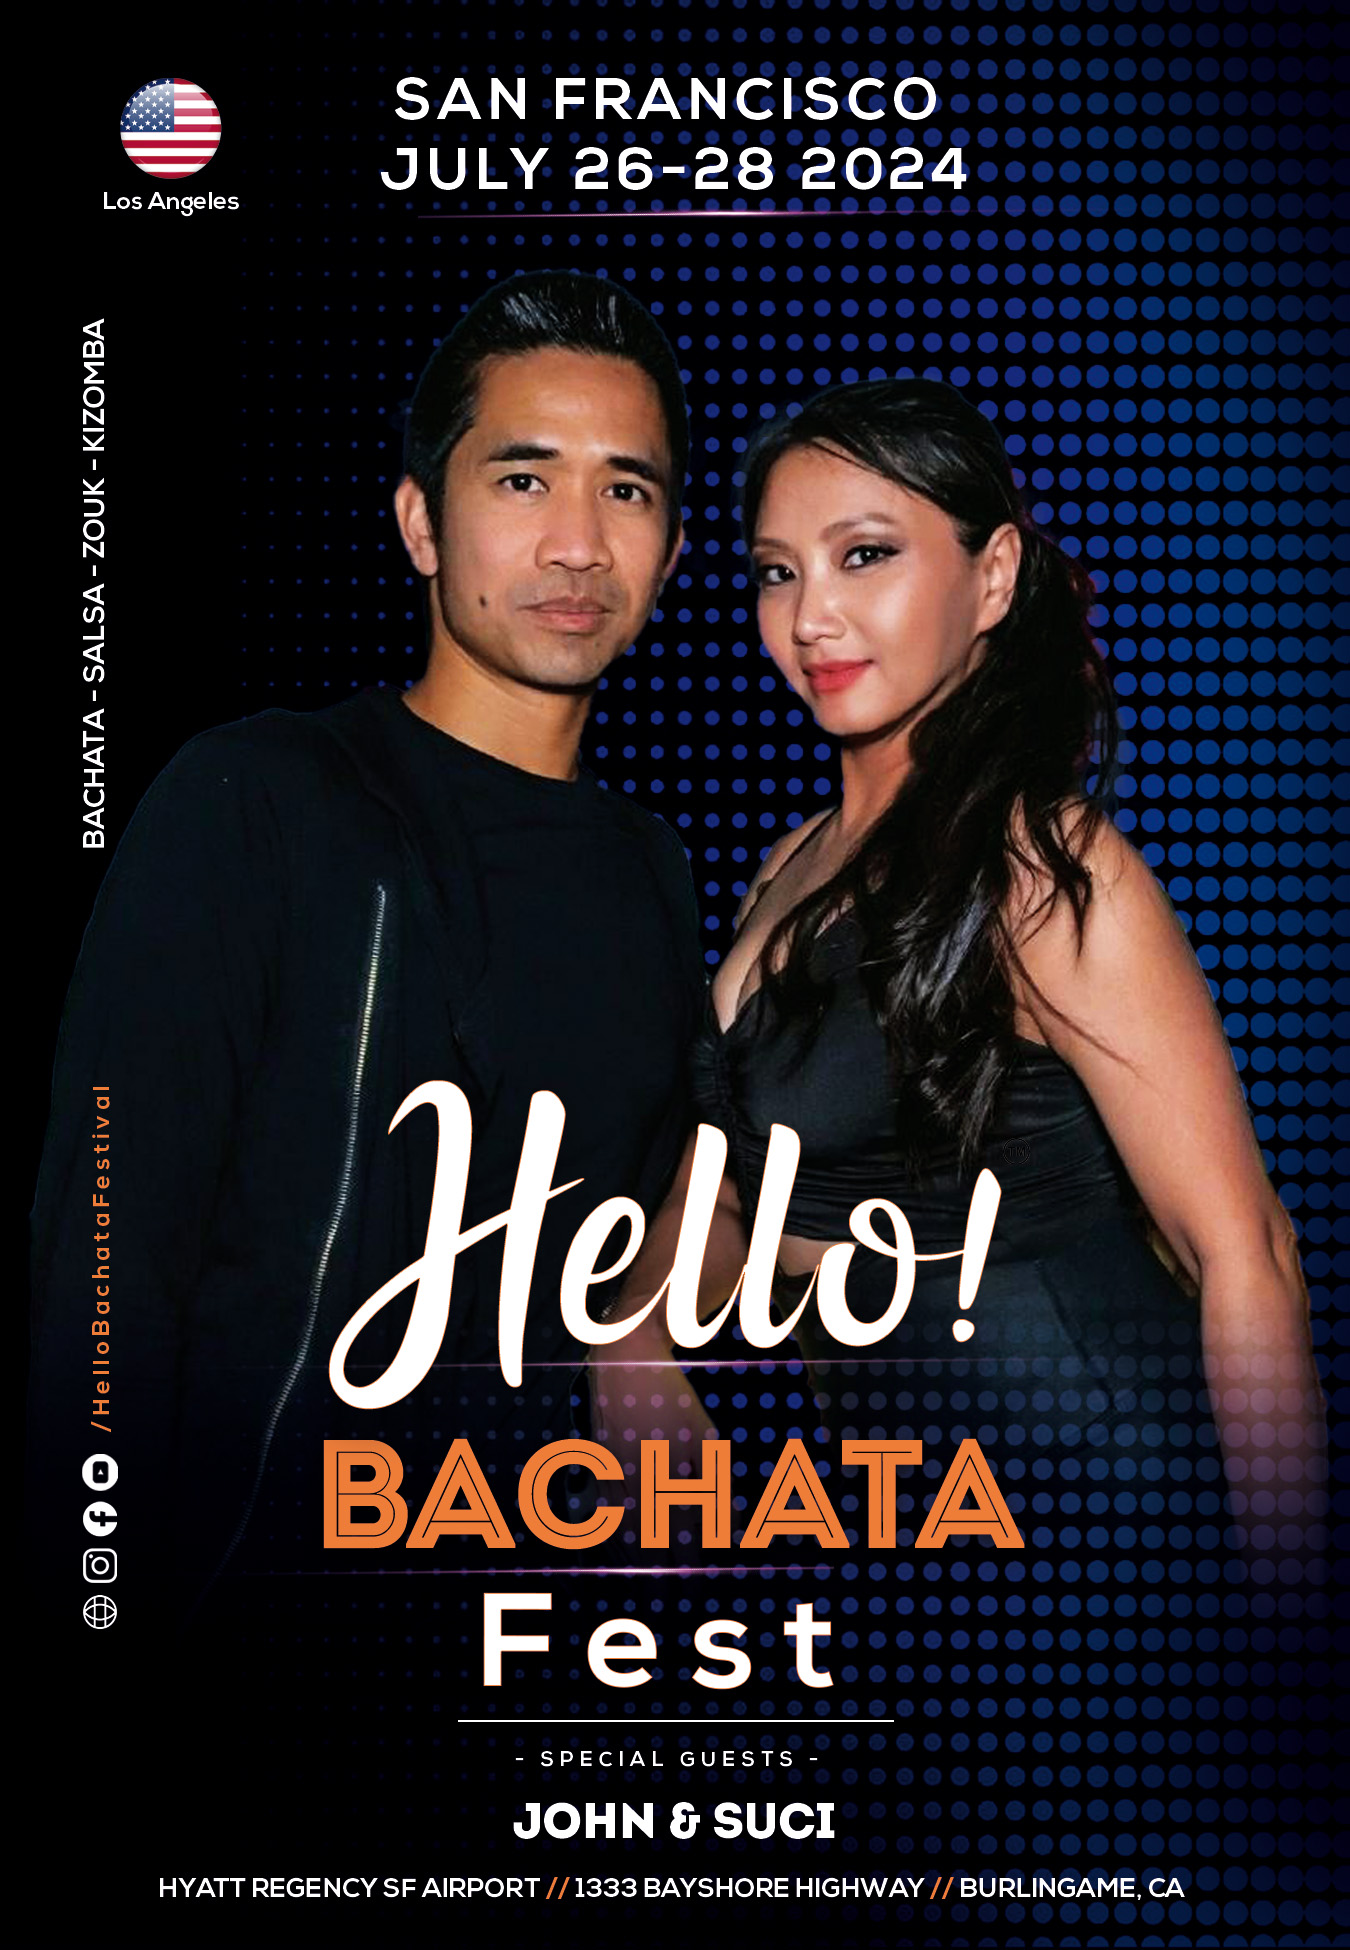 John & Suci - Hello Bachata Fest - Los Angeles